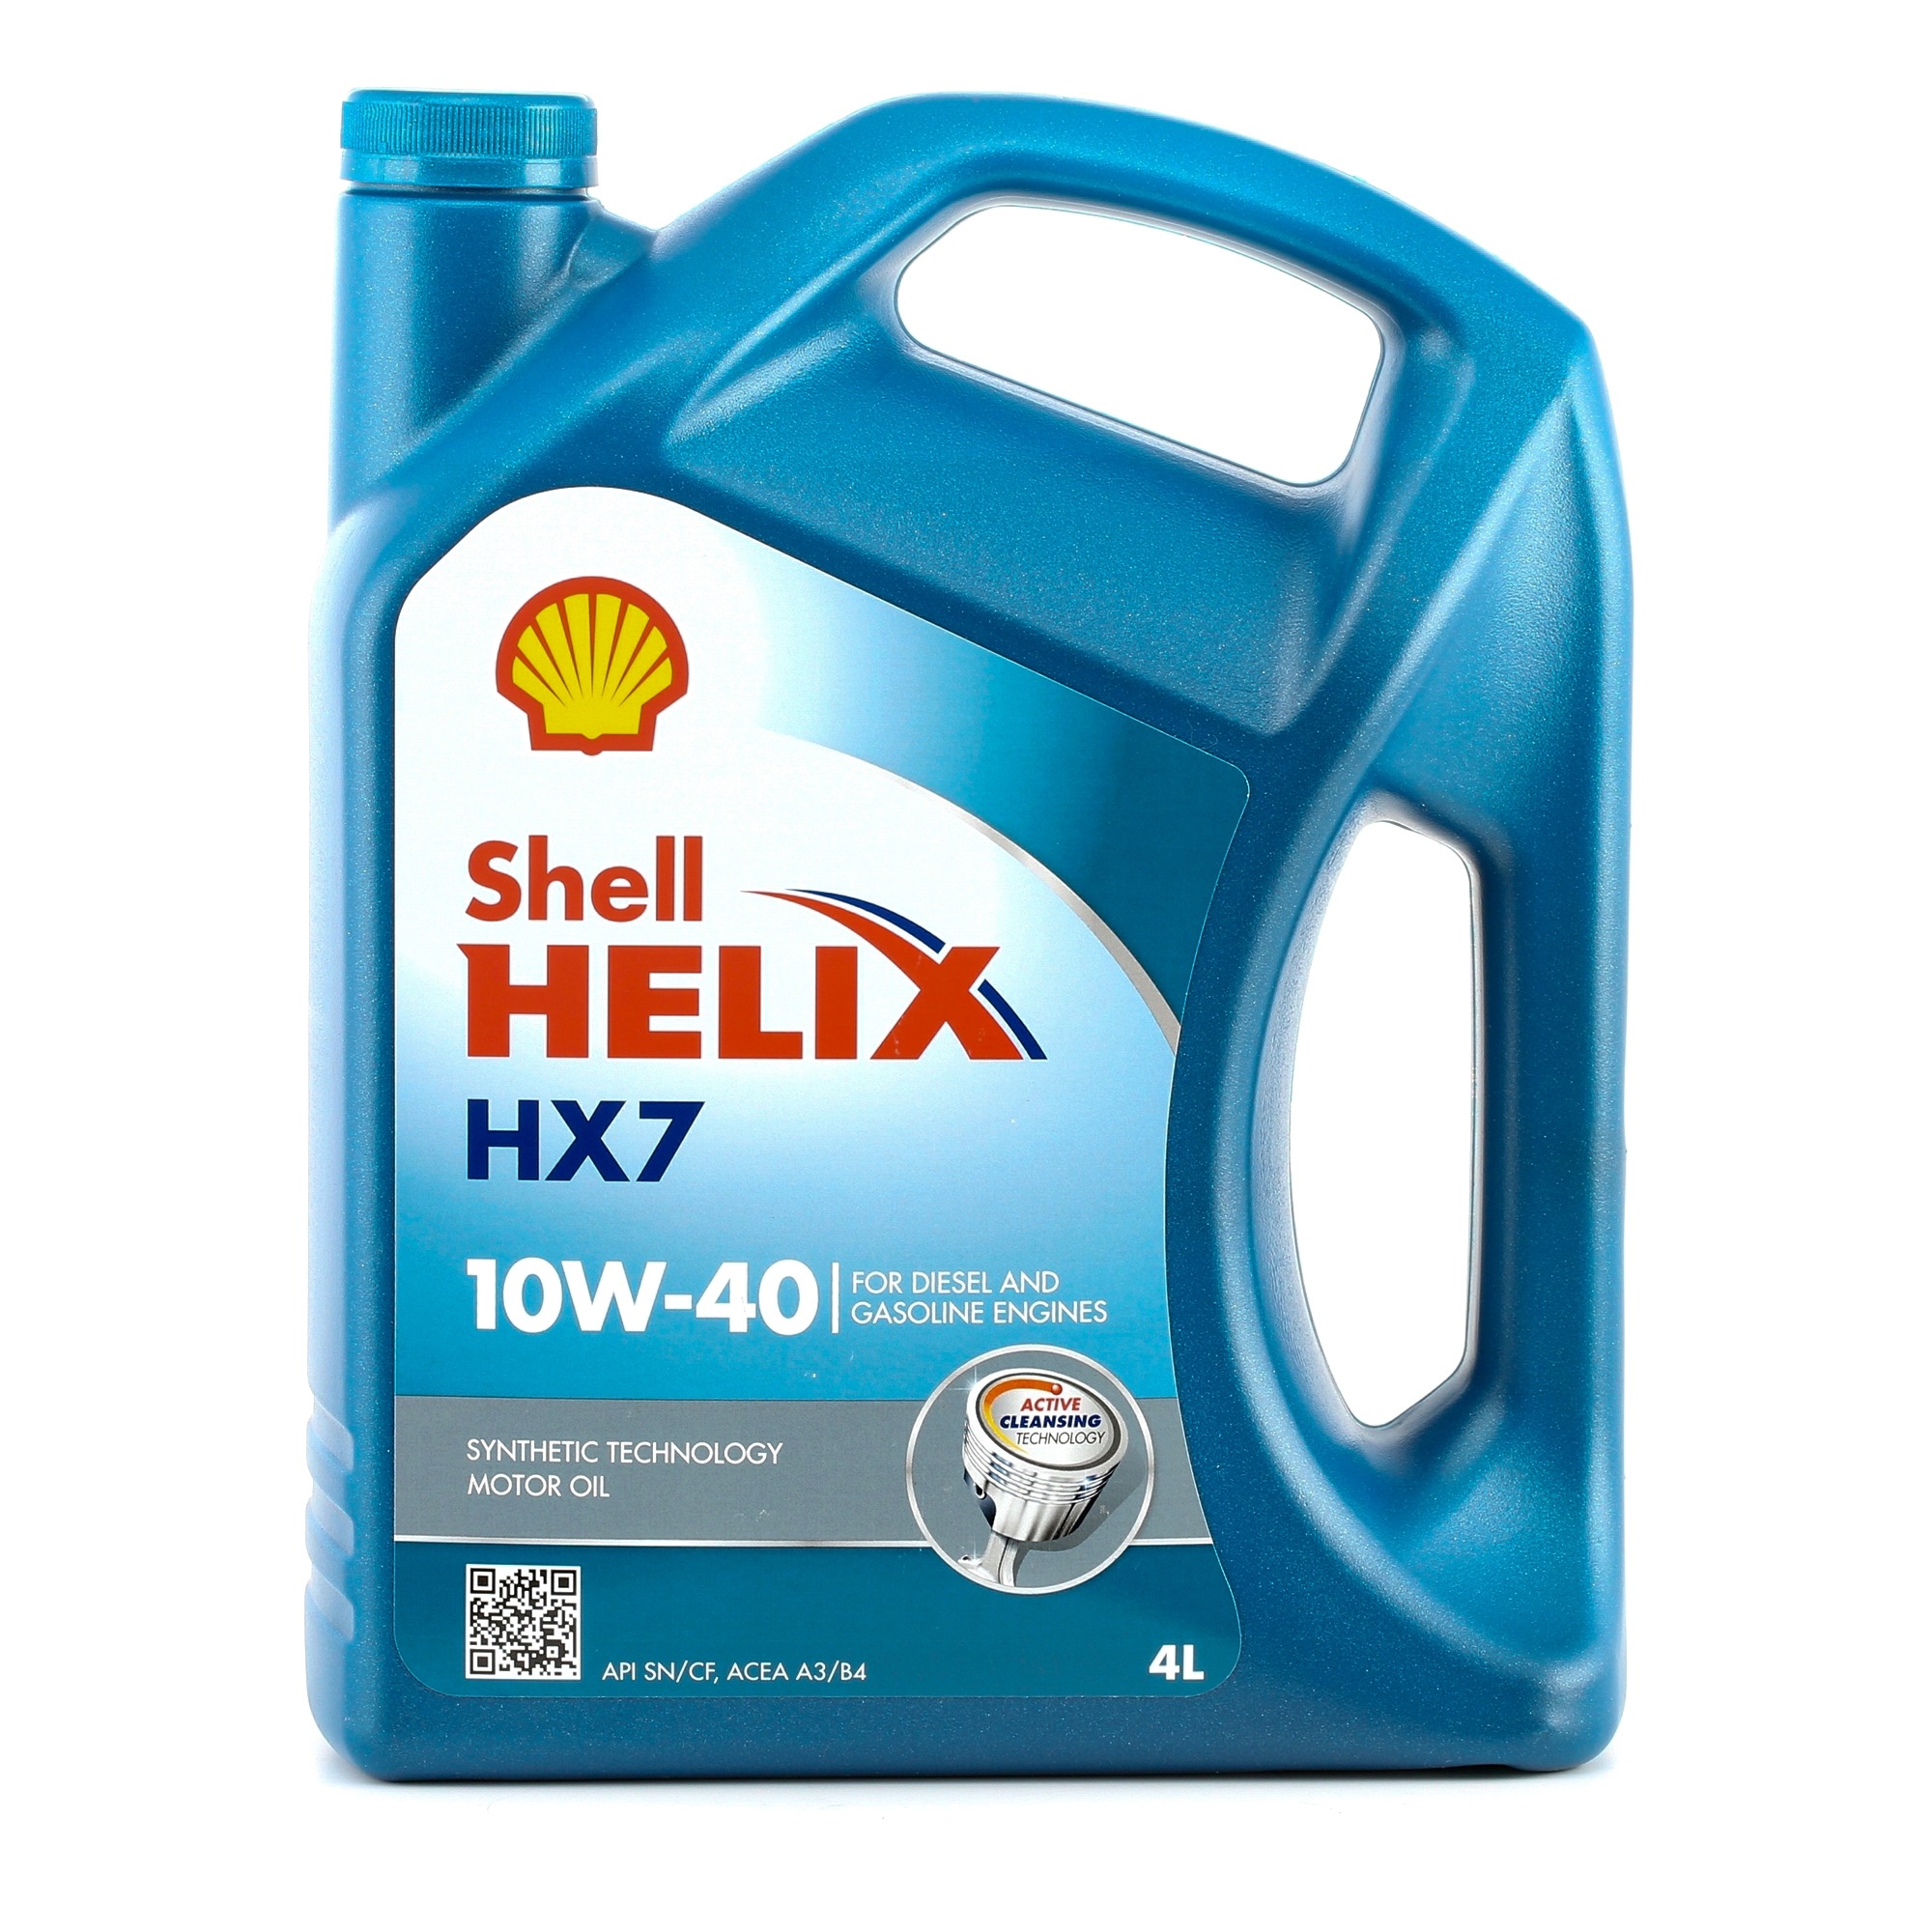 Buy Engine oil SHELL diesel 550046274 Helix, HX7 10W-40, 4l